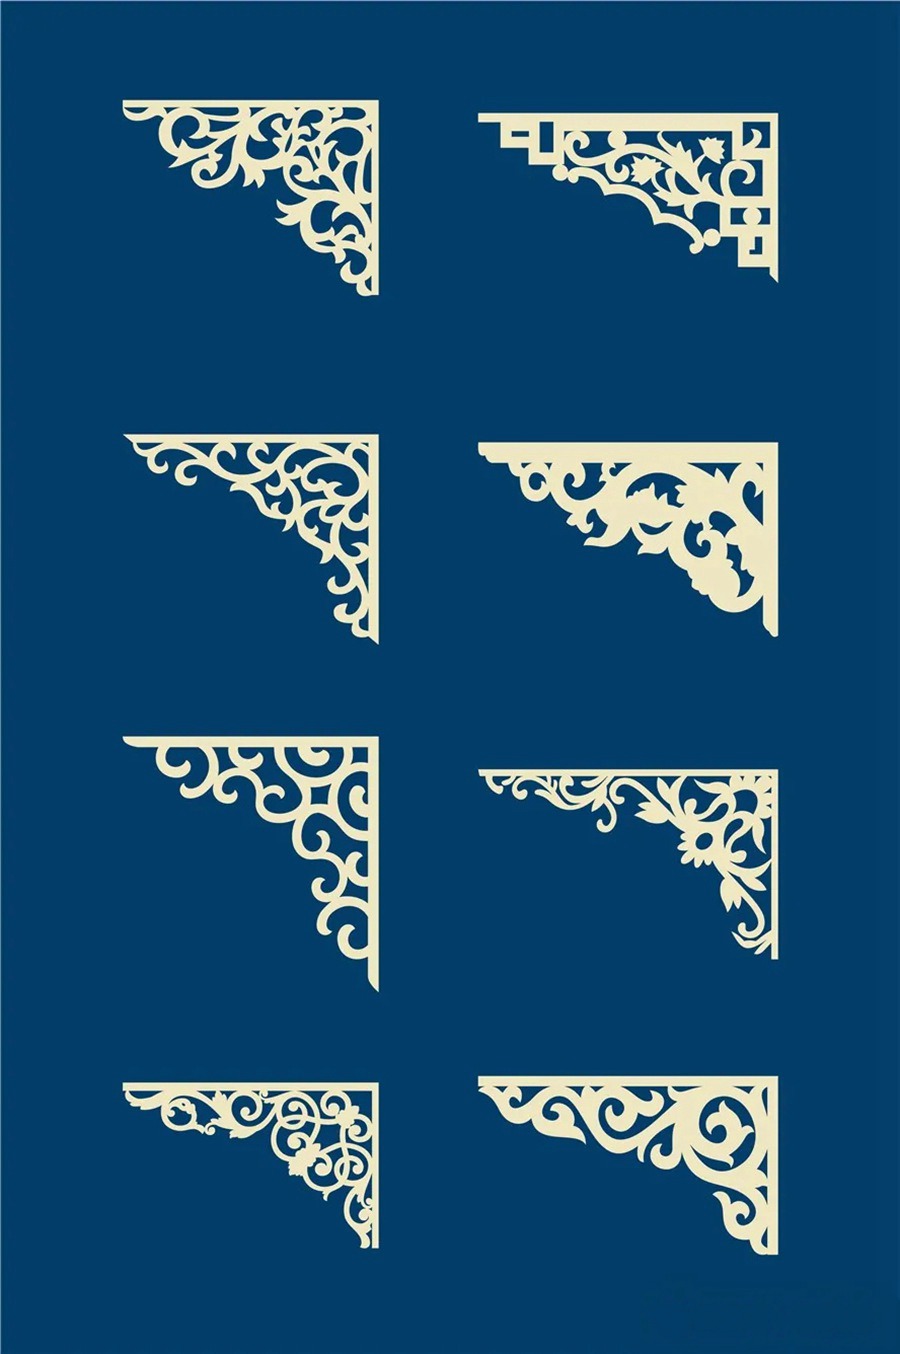 中国风传统古典青花瓷图案花纹图形纹样AI矢量模板花纹设计素材 图片素材 第2张